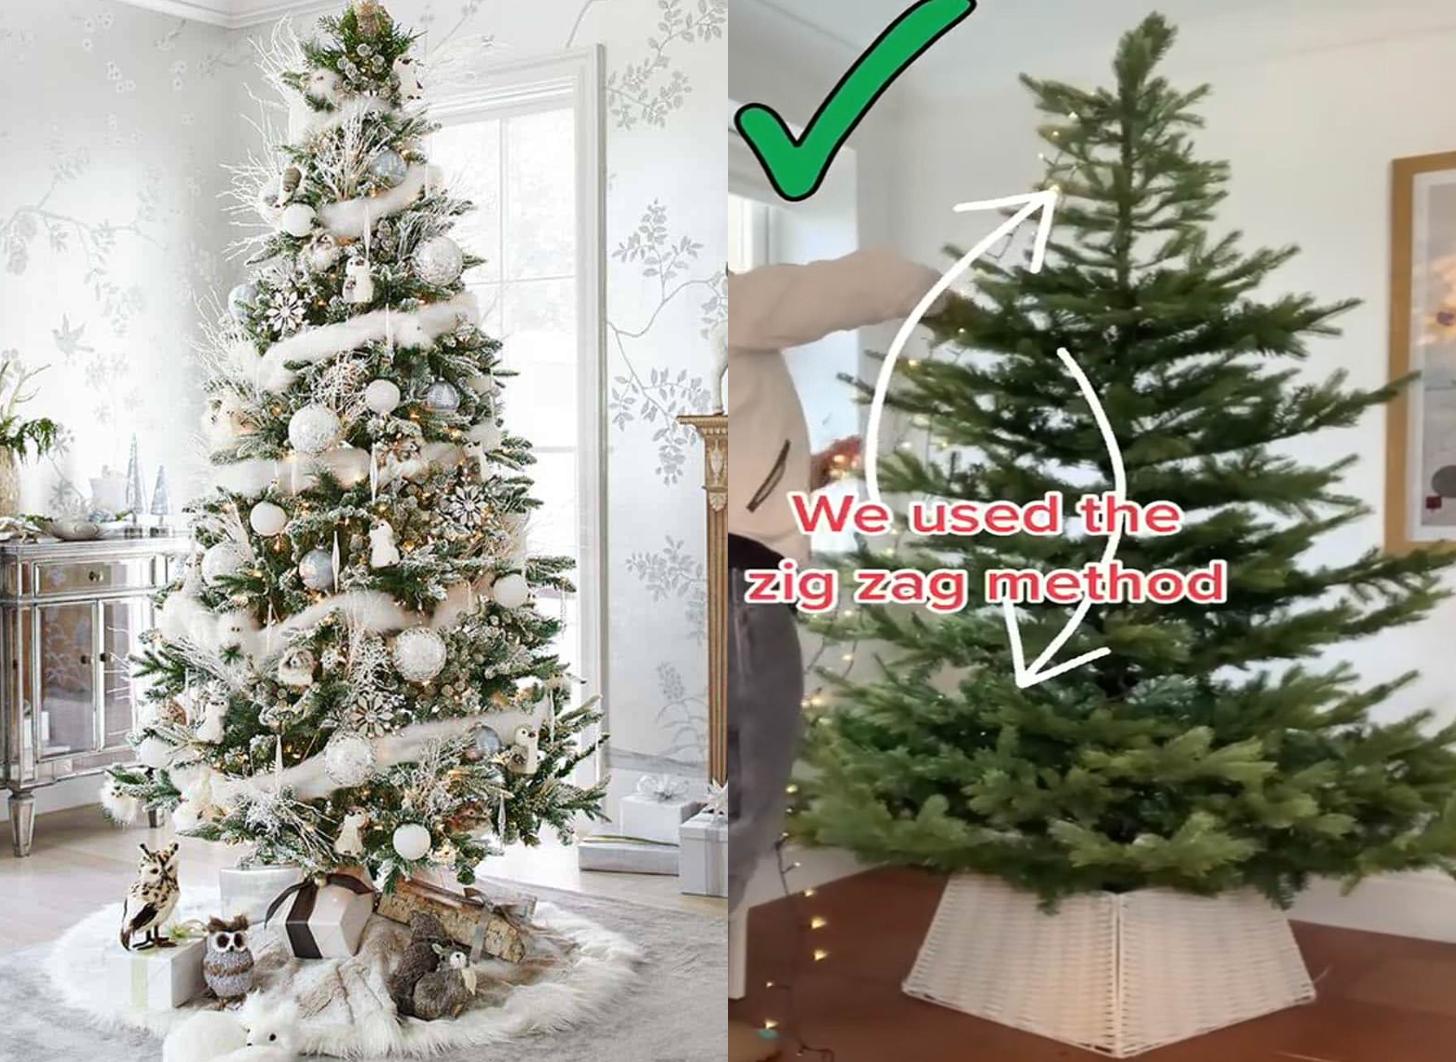 Πώς να στολίσεις το τέλειο Χριστουγεννιάτικο δέντρο βήμα βήμα – Συμβουλές από ειδικούς